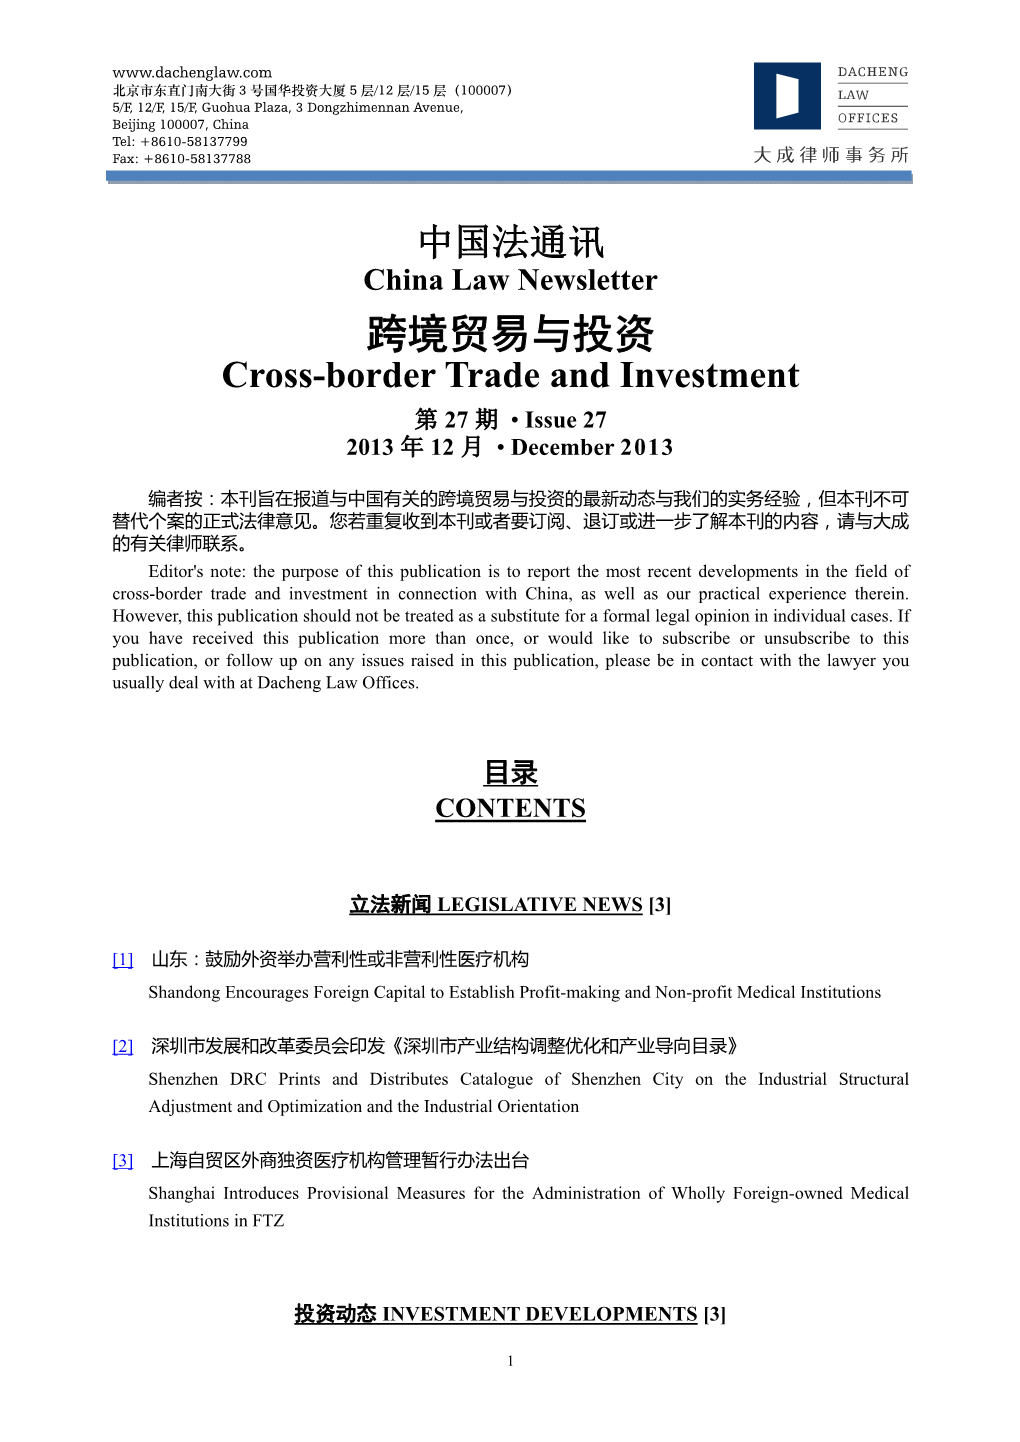 跨境贸易与投资 Cross-Border Trade and Investment 第 27 期 • Issue 27 2013 年 12 月 • December 2013